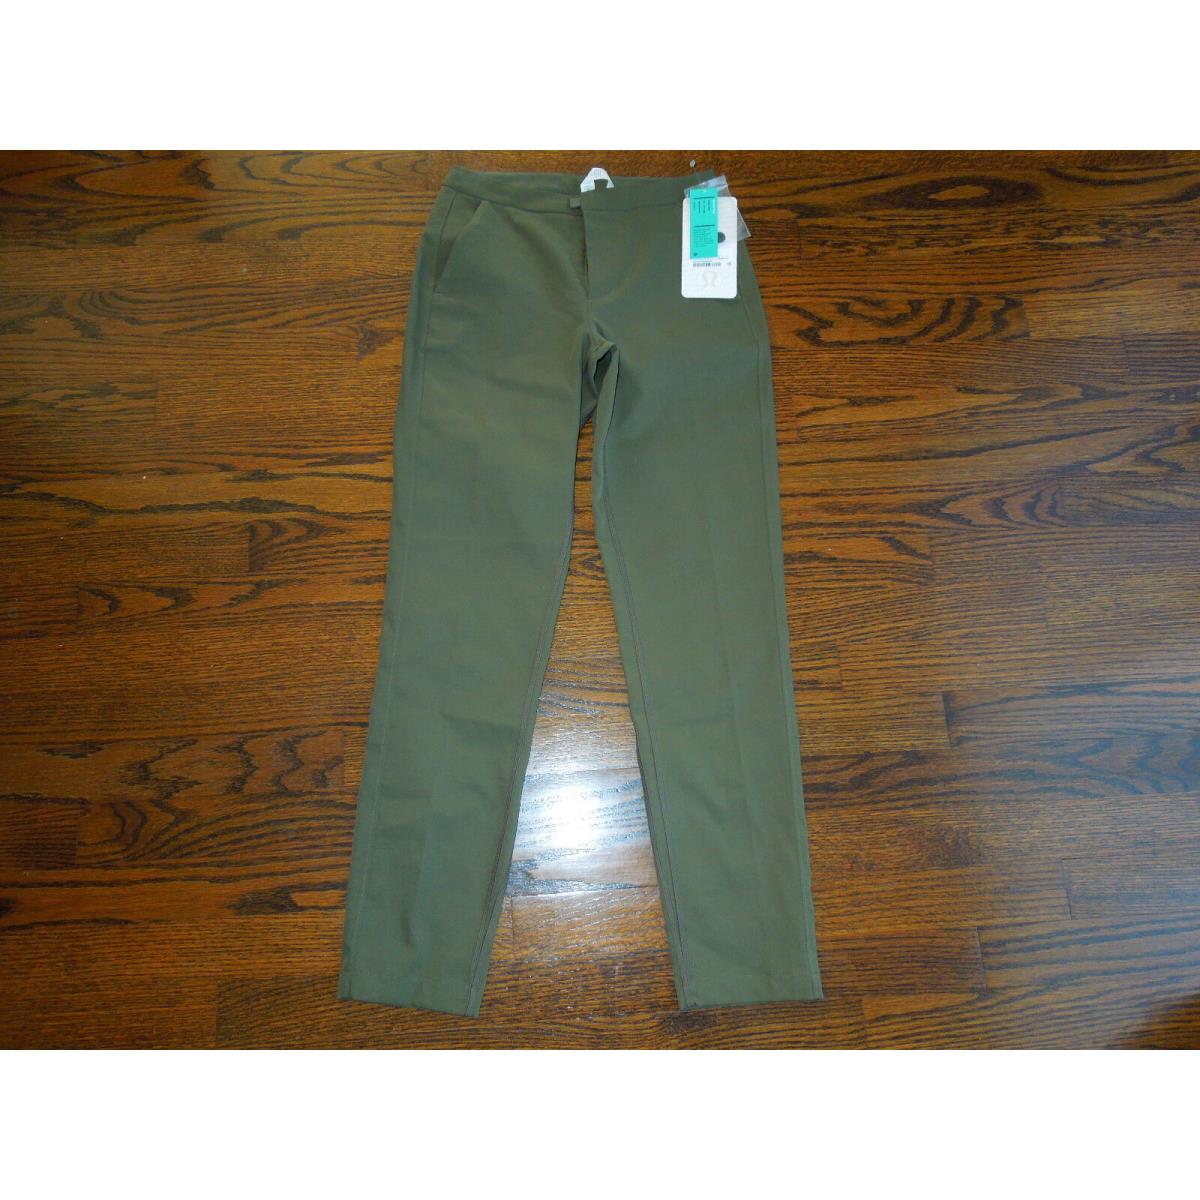 Lululemon Trek Trouser Pants Military Green SZ.2